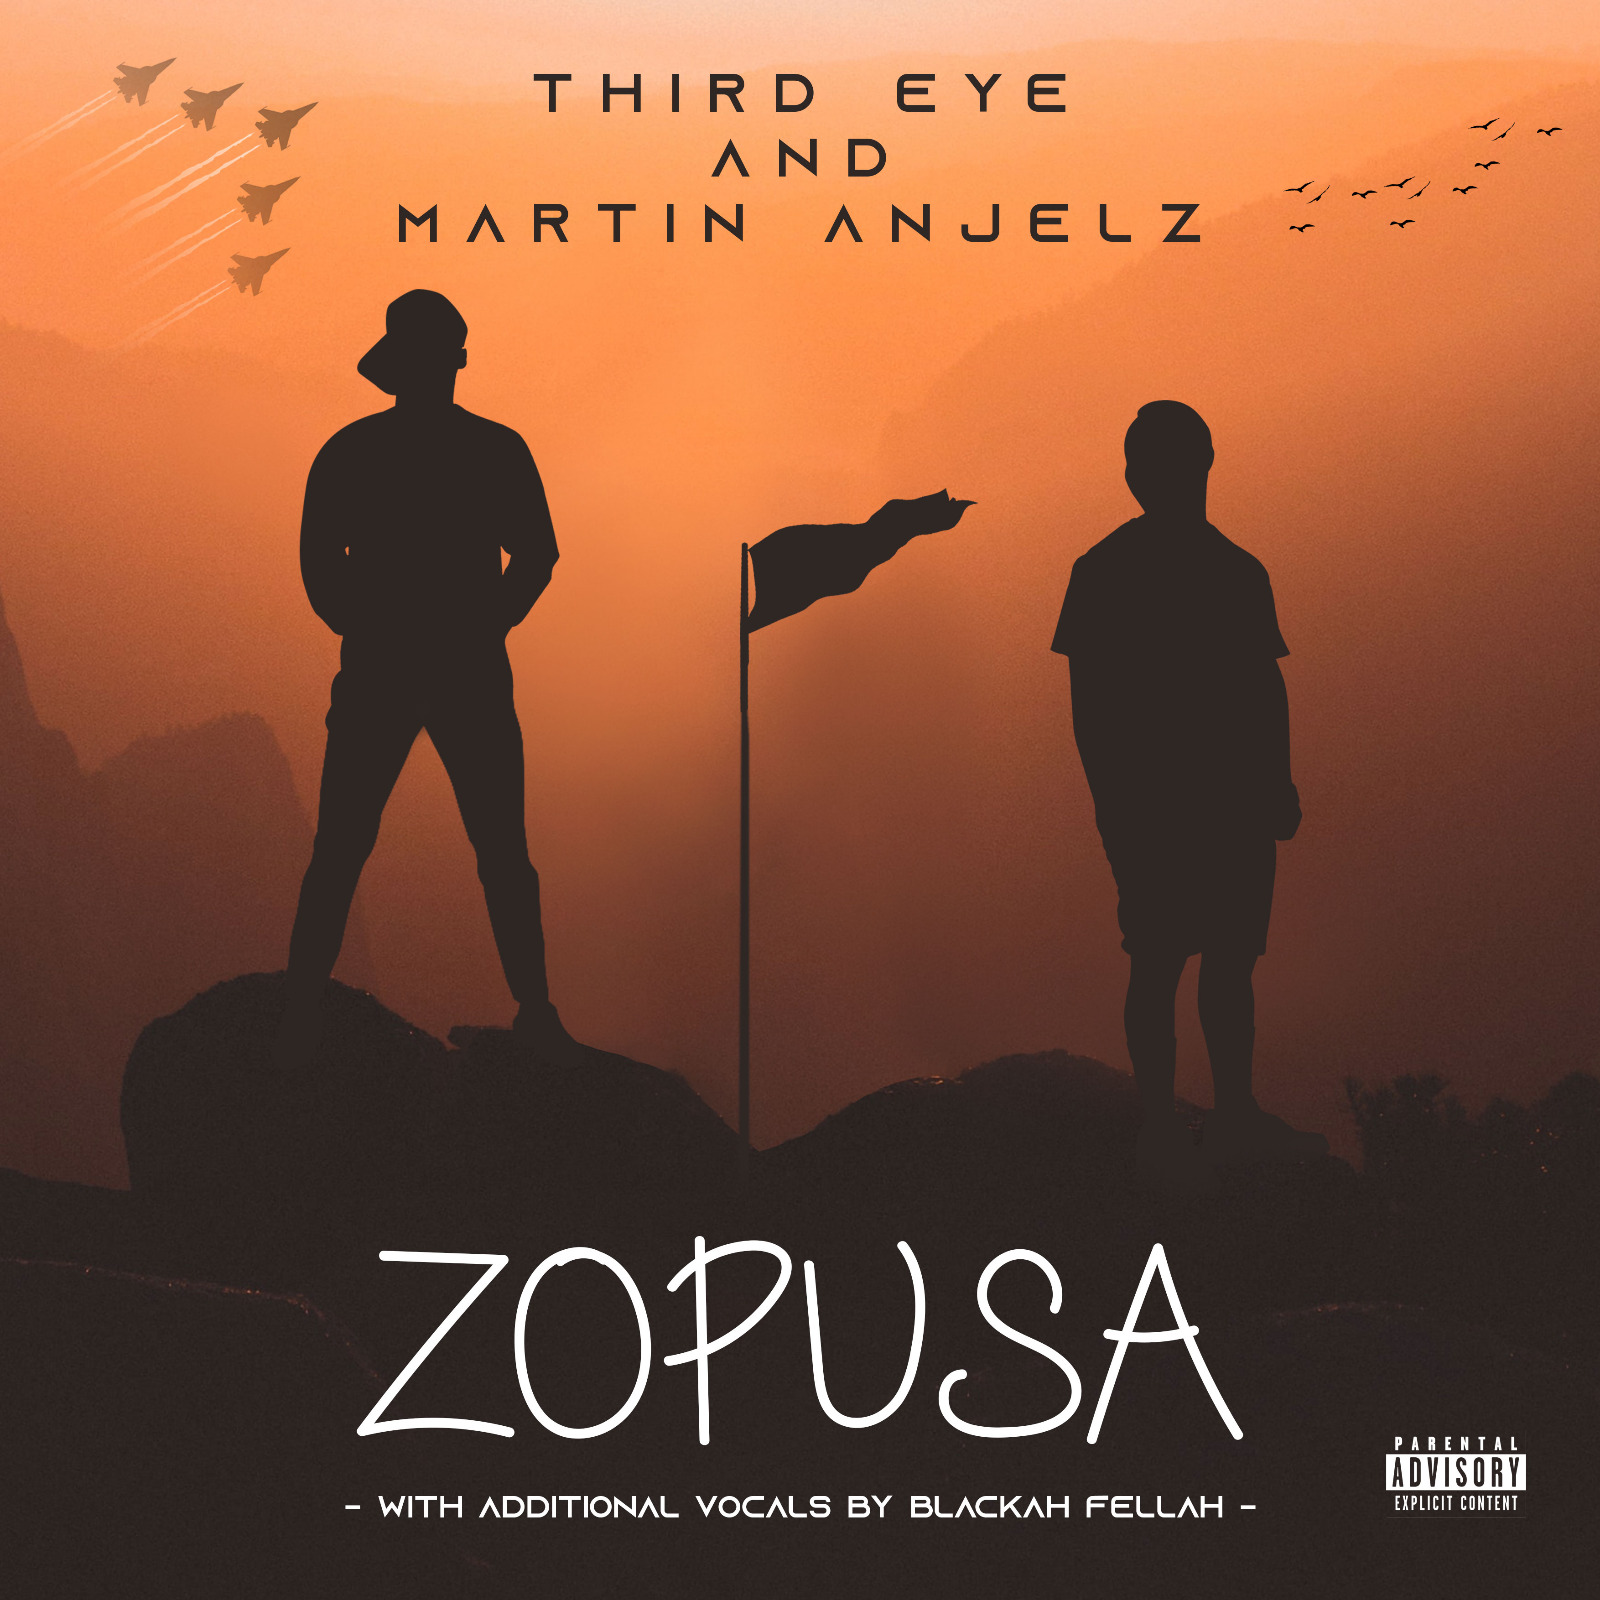 Third-Eye-Martin-Anjelz-Zopusa